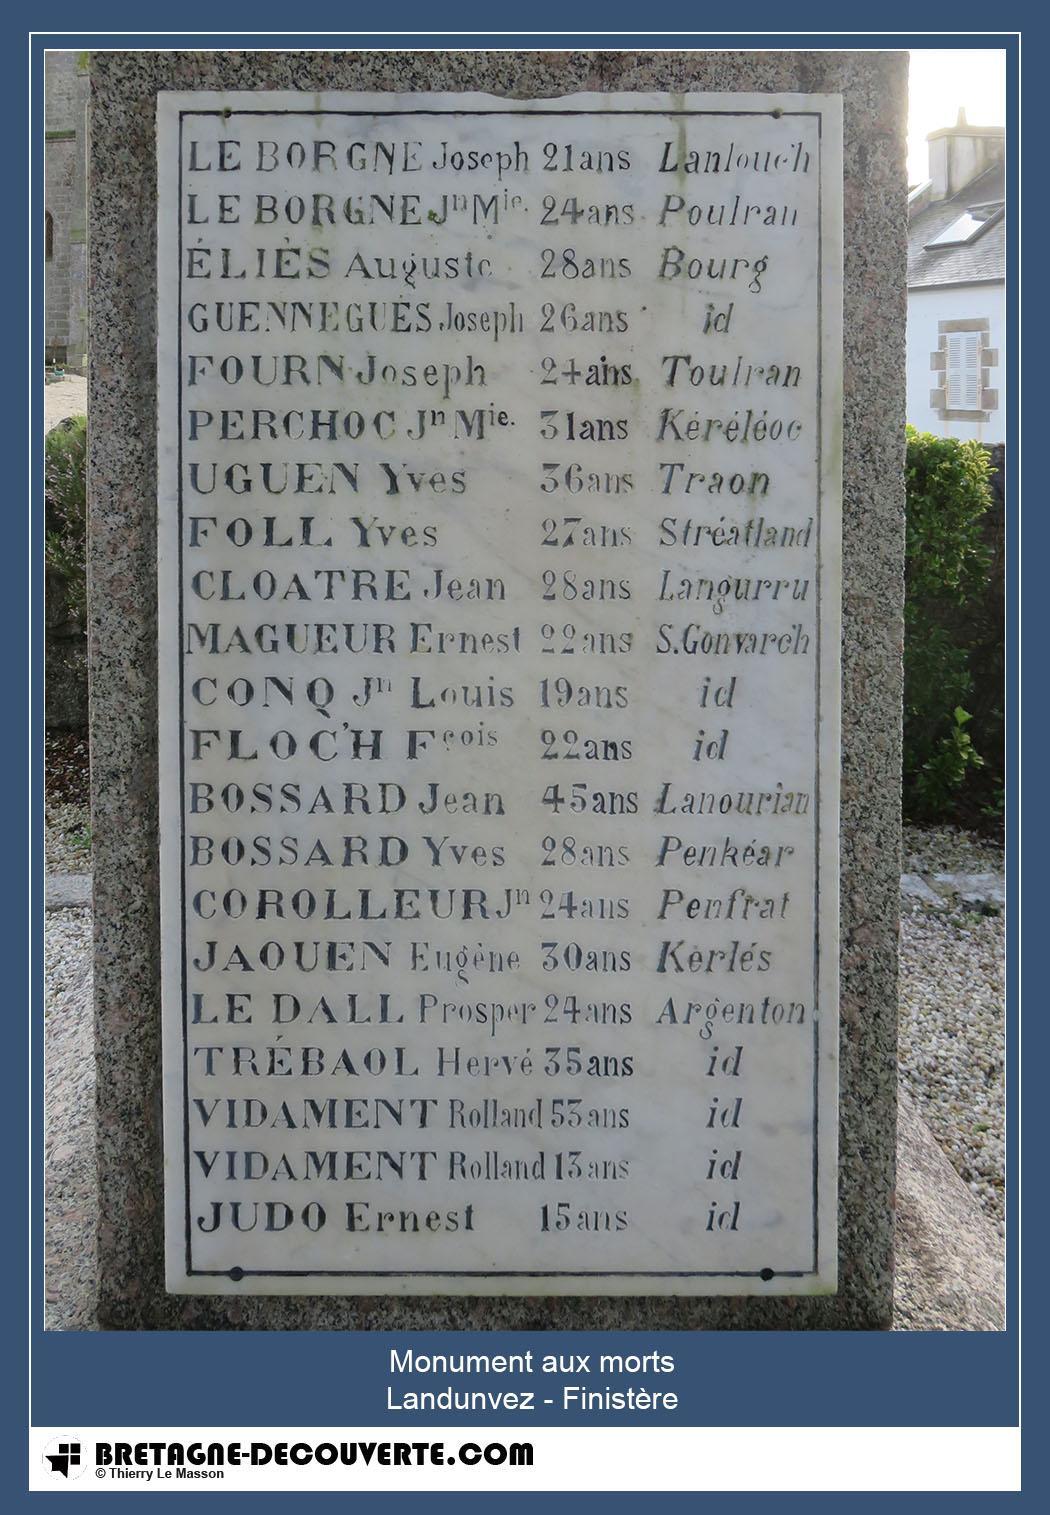 Les noms gravés sur le monument aux morts de Landunvez